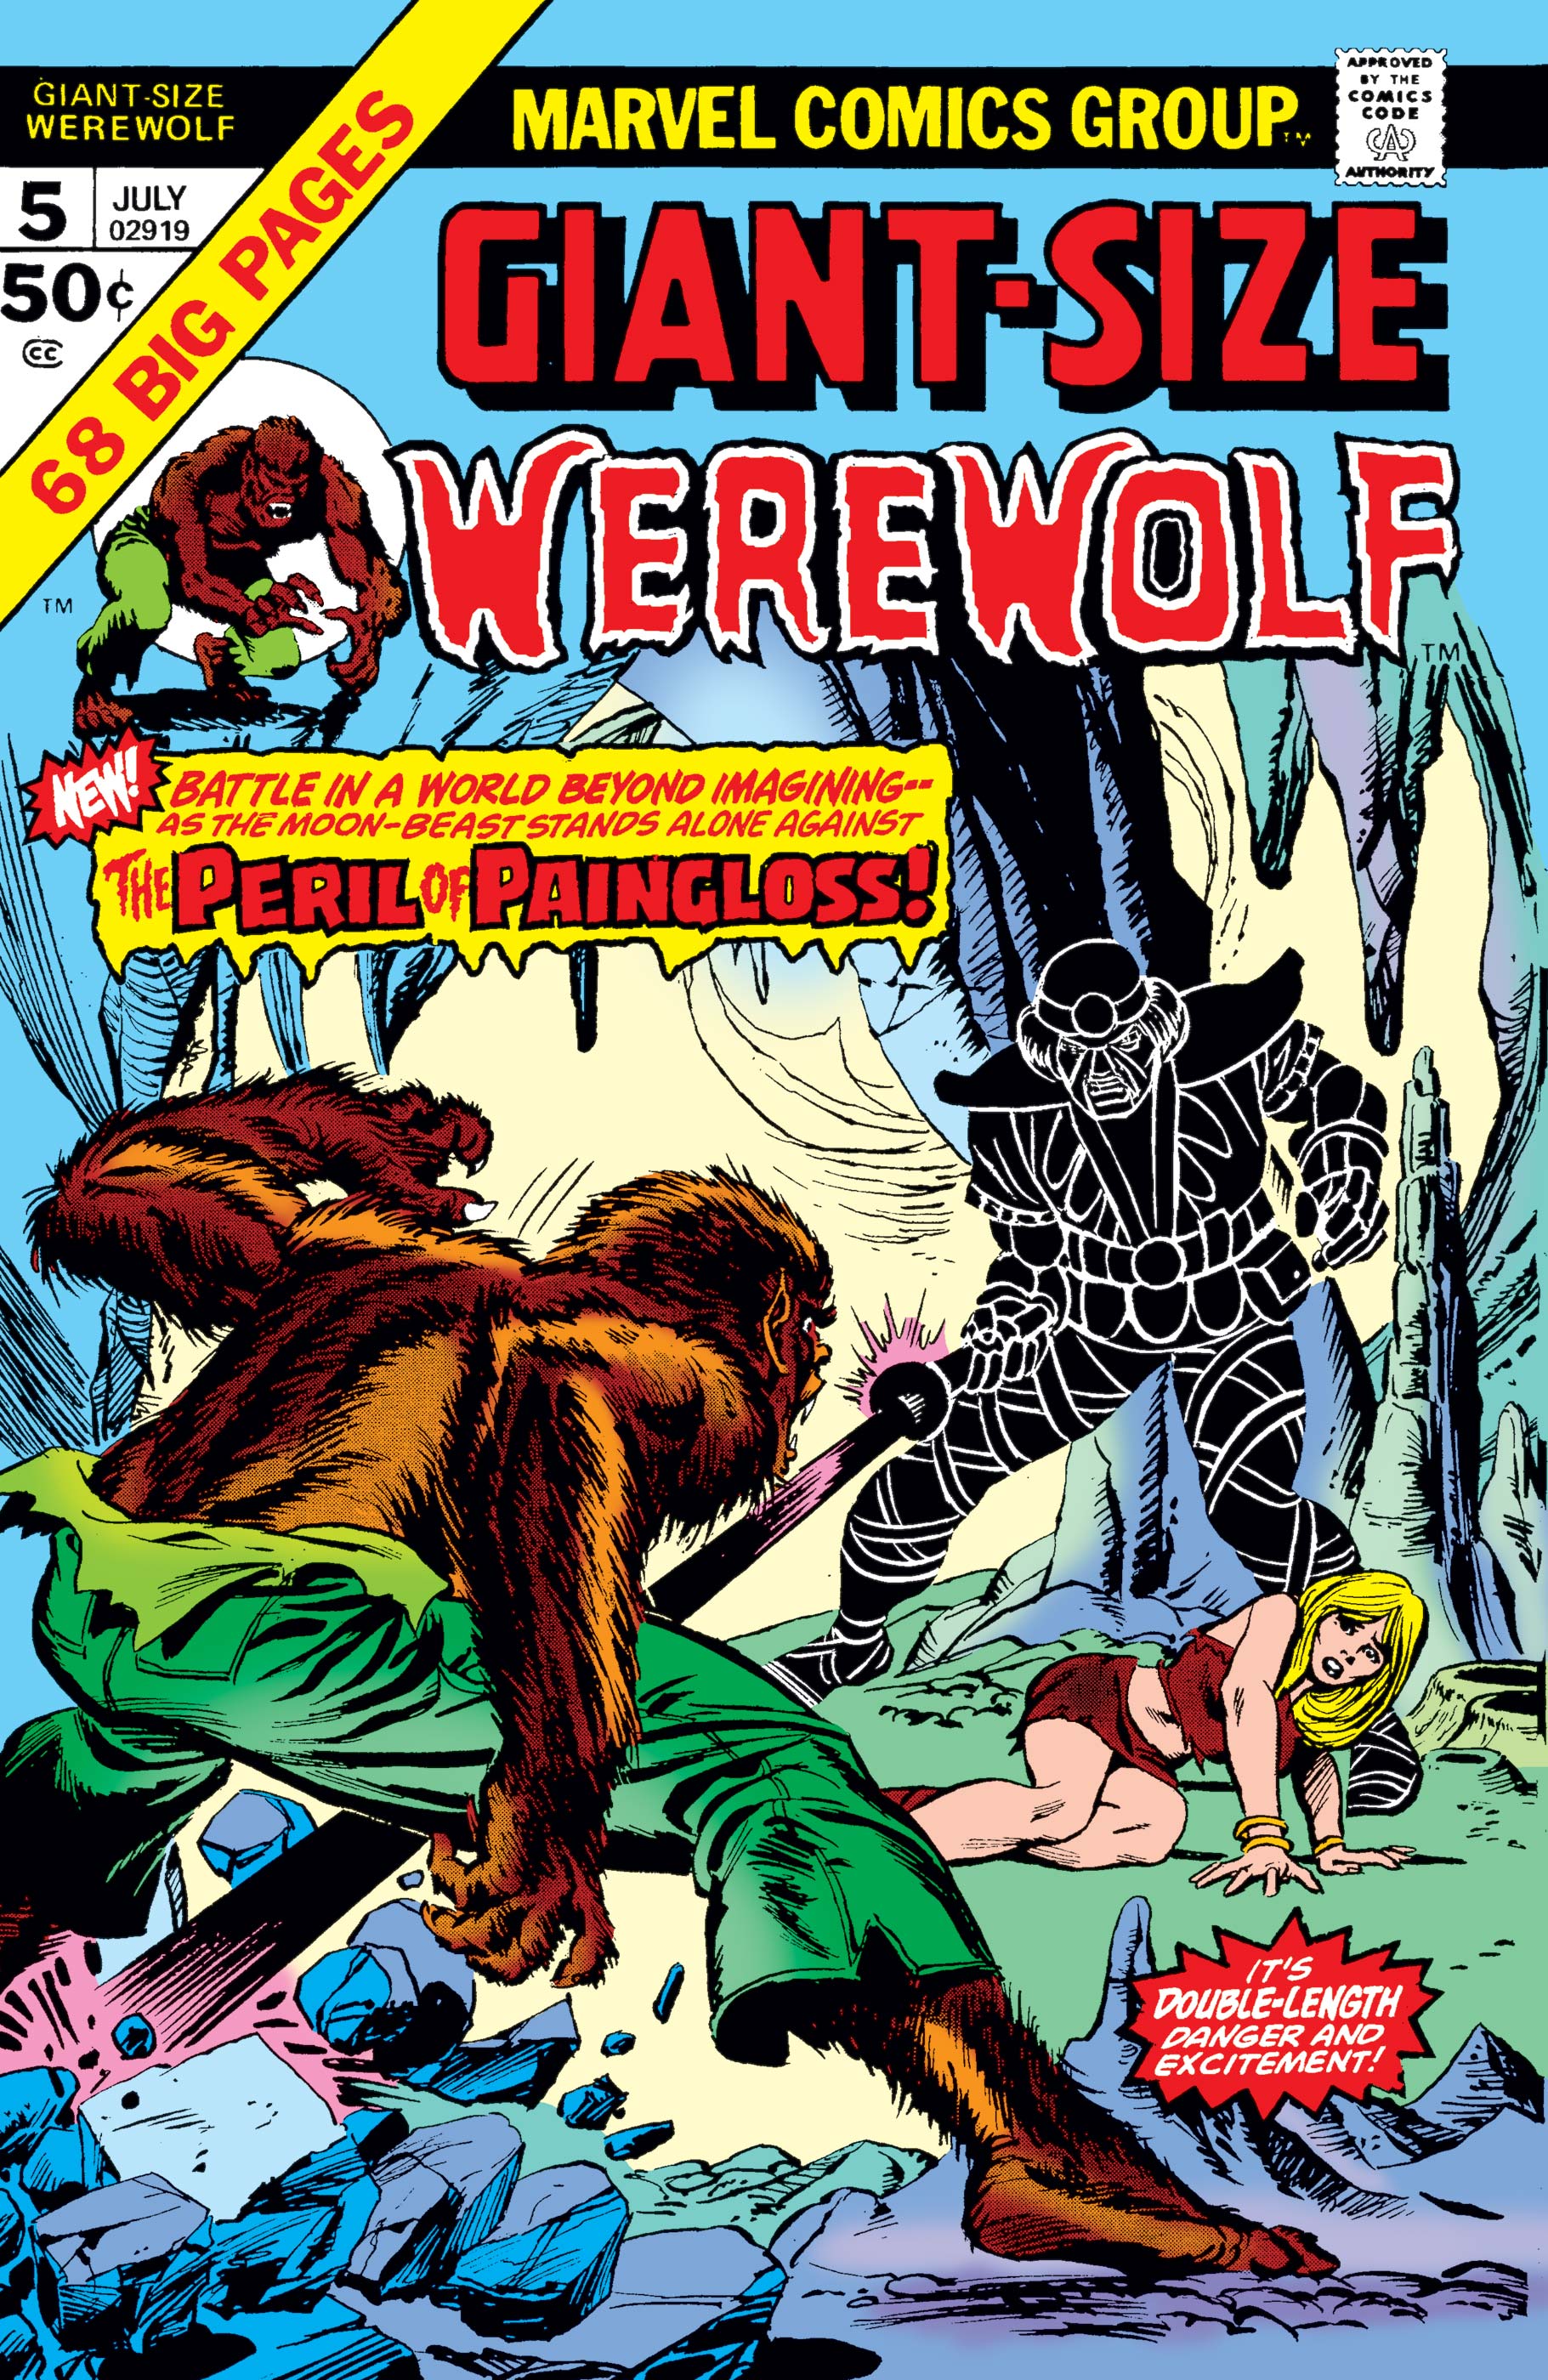 Werewolf by Night #31 (1975) Prices